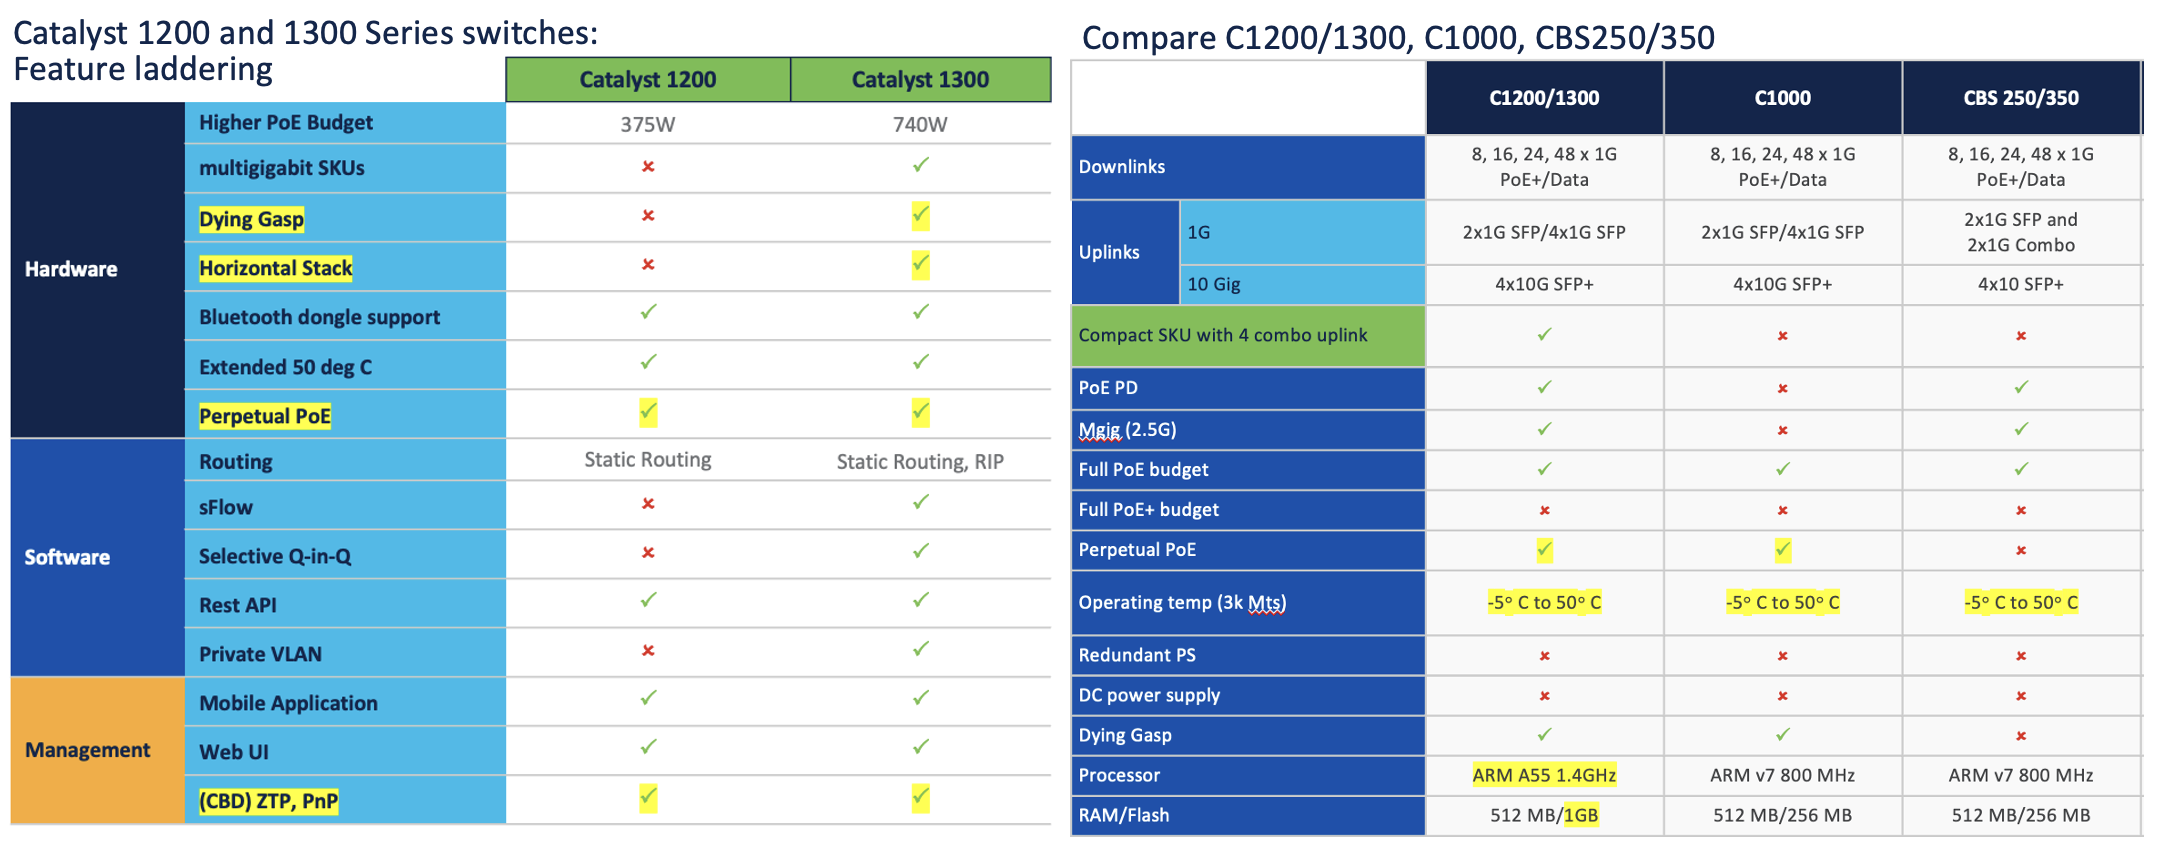 Compare cisco switch C1200/1300